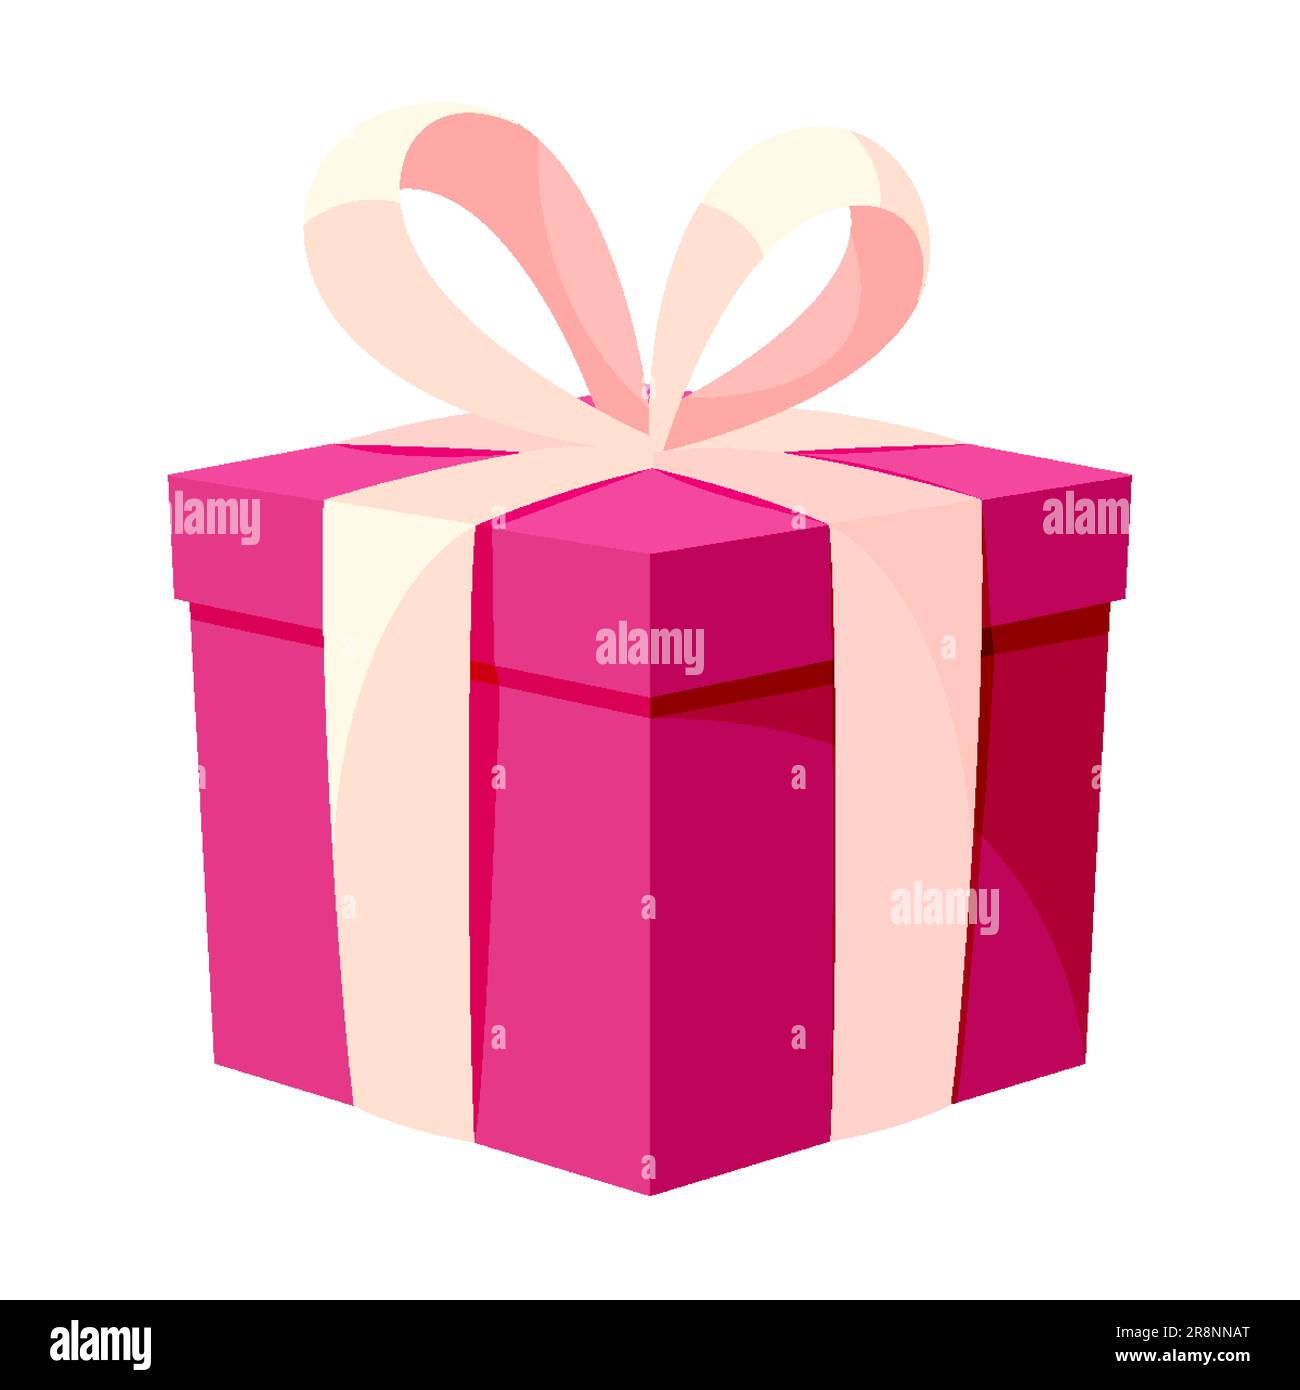 https://c8.alamy.com/compit/2r8nnat/scatola-regalo-rosa-chiusa-piatto-piatto-piatto-a-nastro-isometrico-vacanza-sorpresa-segreto-pacchetto-festivo-bello-compleanno-matrimonio-importante-evento-decorazione-simbolo-bonus-vendita-sconto-promozione-icona-banner-isolato-2r8nnat.jpg